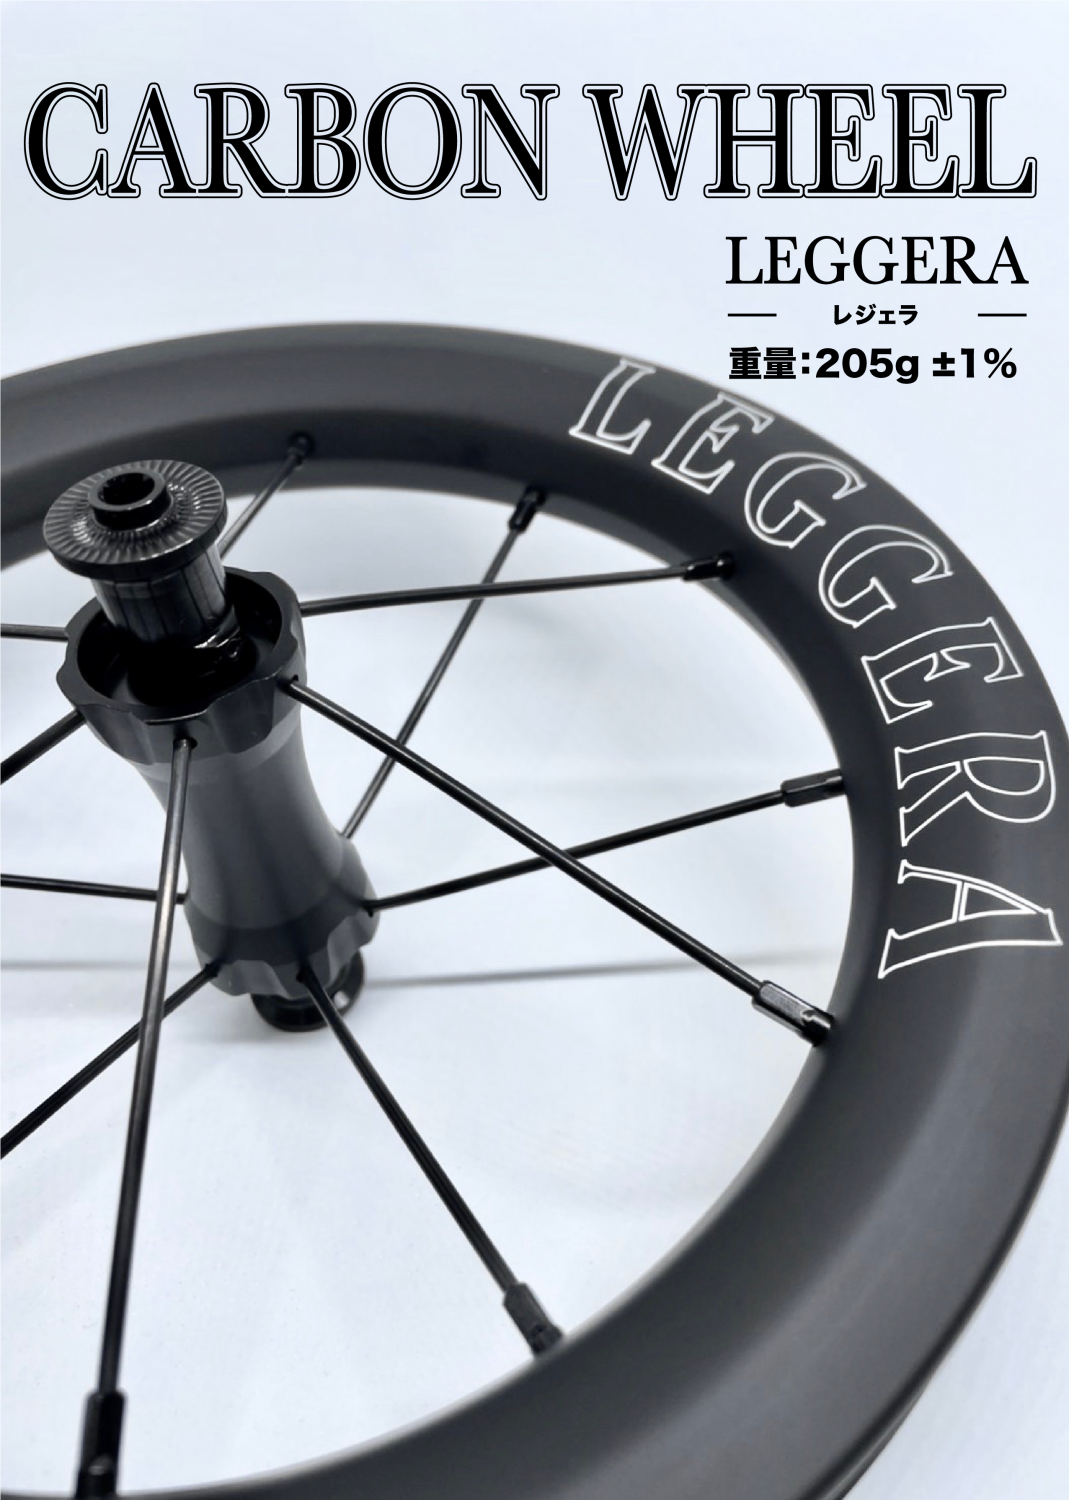 レッジェーラ特集② ワイドリム編 | Tsuguo Yamaguchiのランバイク 